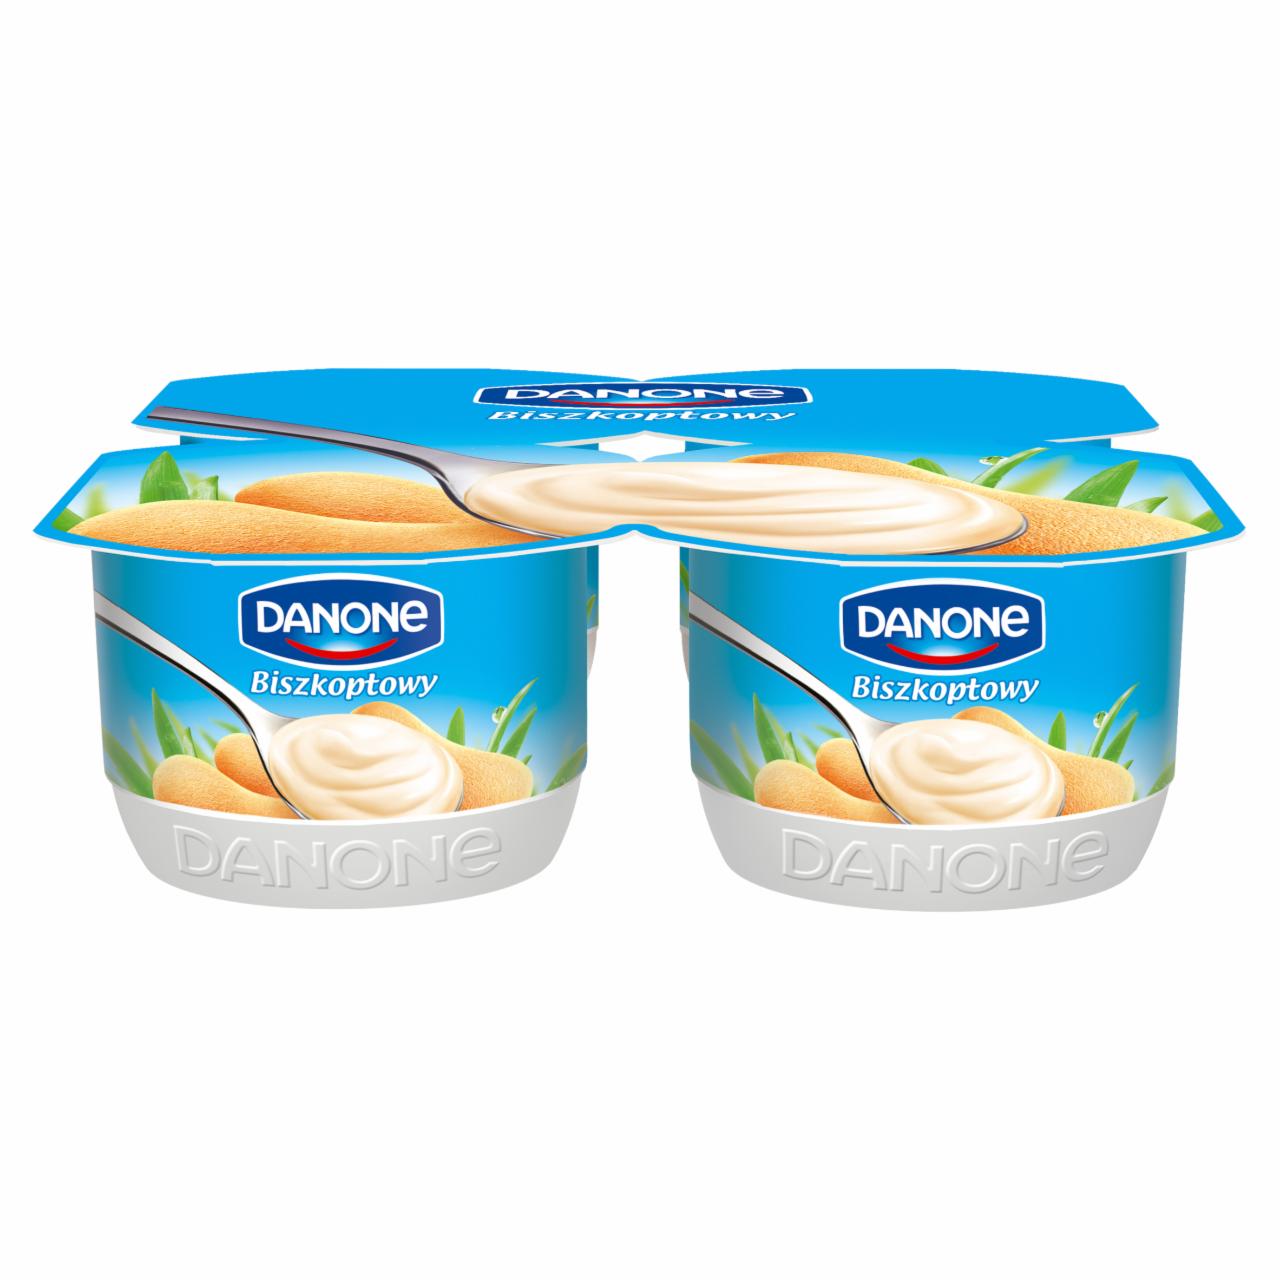 Zdjęcia - Danone Jogurt kremowy smak biszkoptowy 480 g (4 x 120 g)